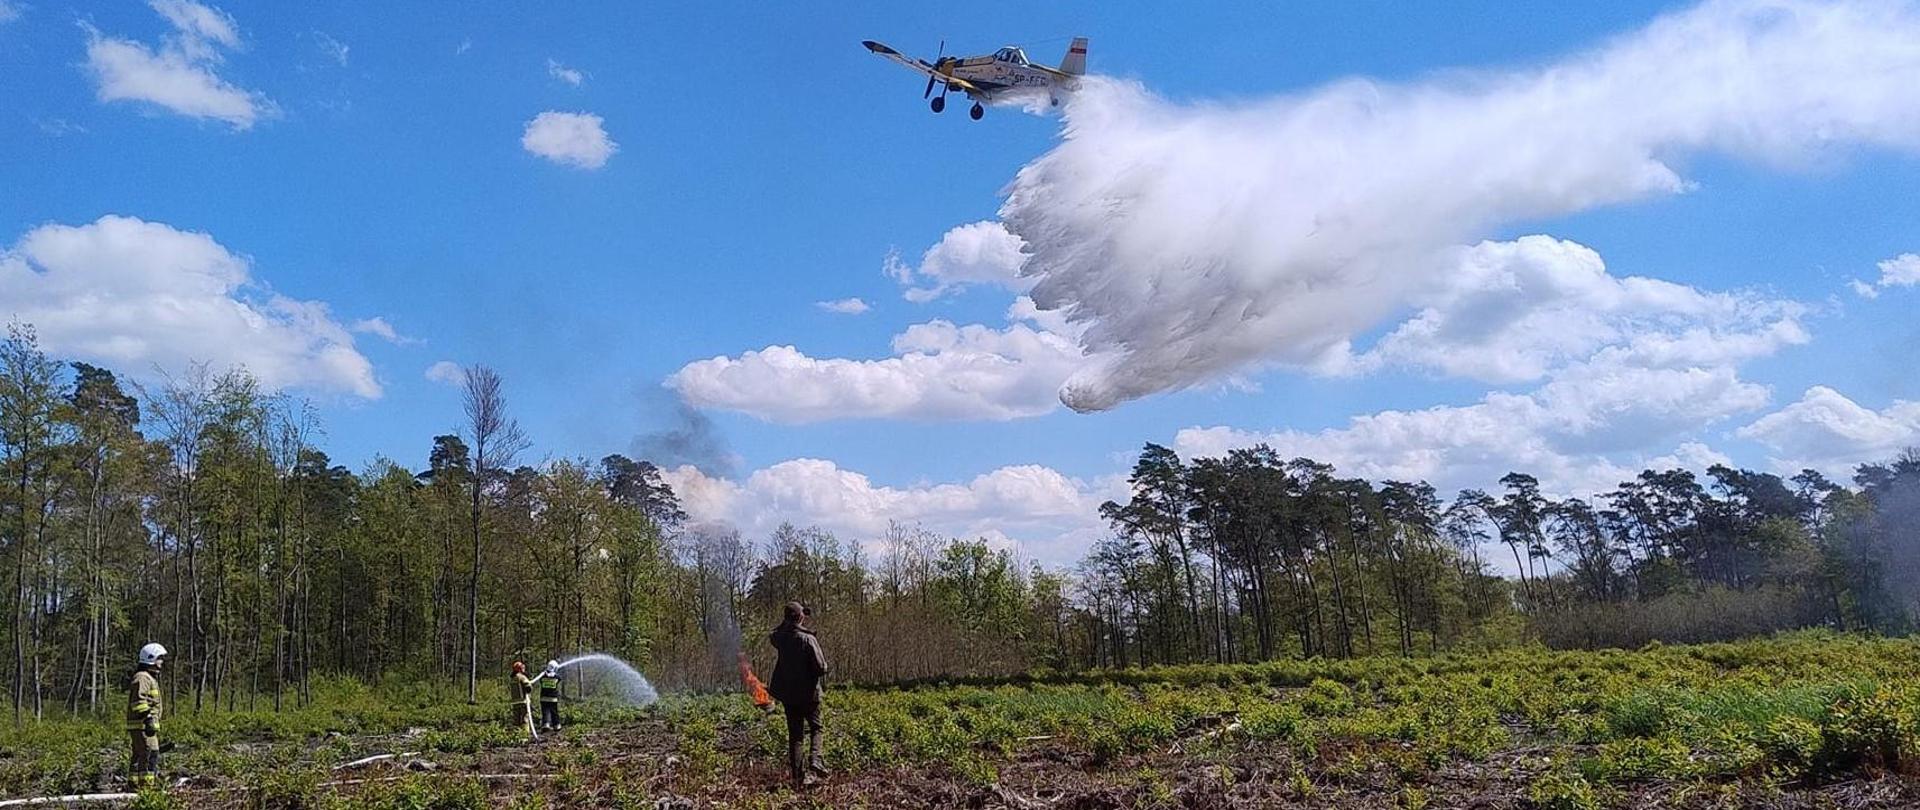 Zdjęcie pokazuje zrzut wody z samolotu pożarniczego